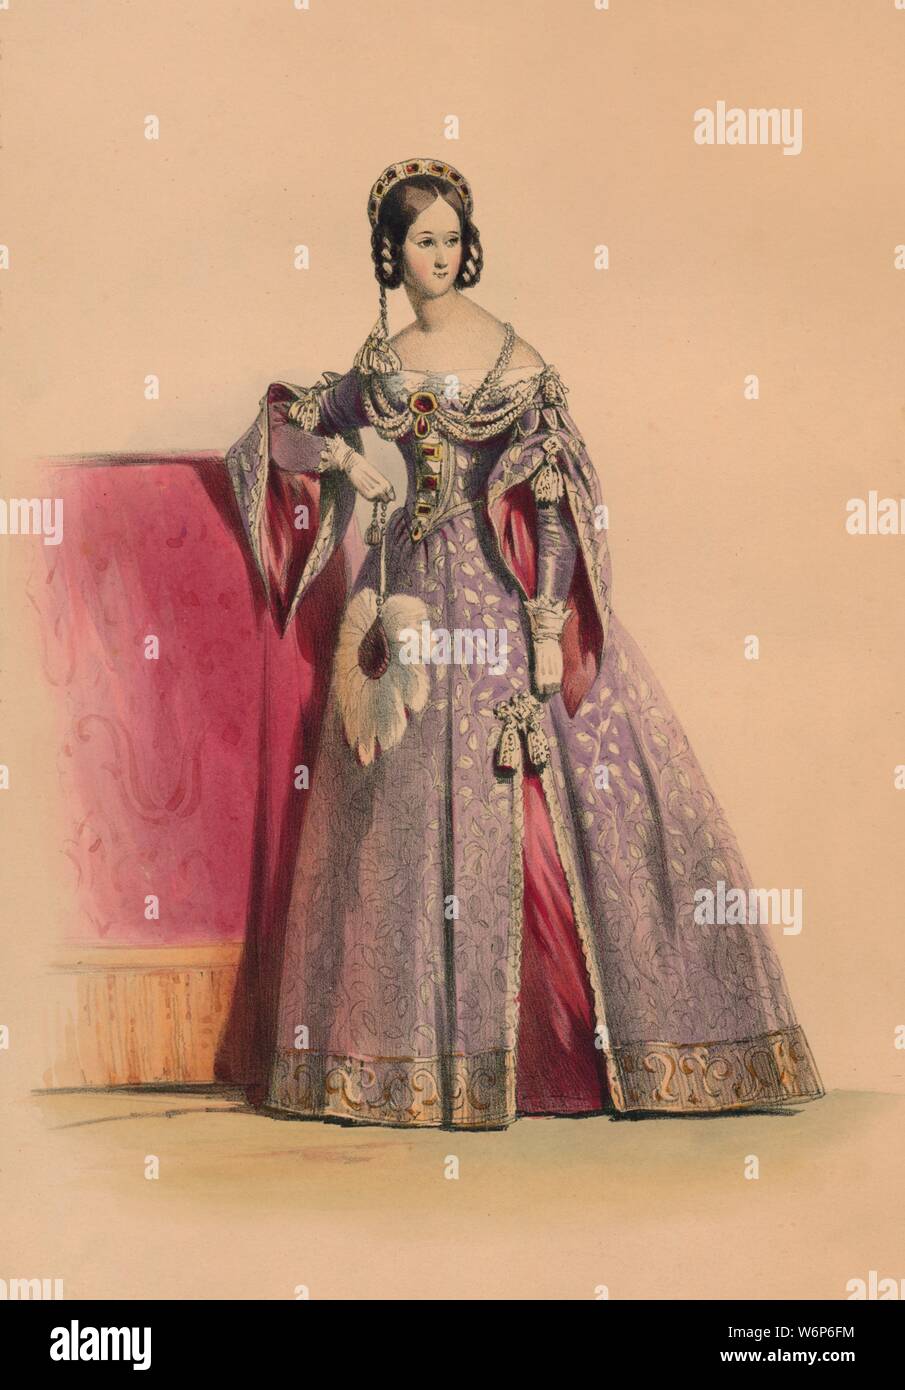 Gast in Kostüm für die Queen Victoria Bal Costum&#xe9;, 12. Mai 1842, (1843). Frau in einem Kleid mit Schlitz Ärmel, eine Tiara mieder und Kopfschmuck, Holding ein Strauß - federfächer. Mitglieder des königlichen Haushalts wurden erwartet, Kleid der Plantagenet Zeitraum zu tragen (c) 1154-1485, obwohl andere Gäste tragen könnte Kostüme Ihrer eigenen Wahl. Die Kostüme wurden unter der Aufsicht von James Robinson Planch entworfen &#xe9; und wurden speziell für die Arbeiten an die rückläufige Spitalfields Seidenindustrie zu geben. Der Ball von 1842, im Buckingham Palace in London stattfand, war die erste von drei Kostüm bal Stockfoto